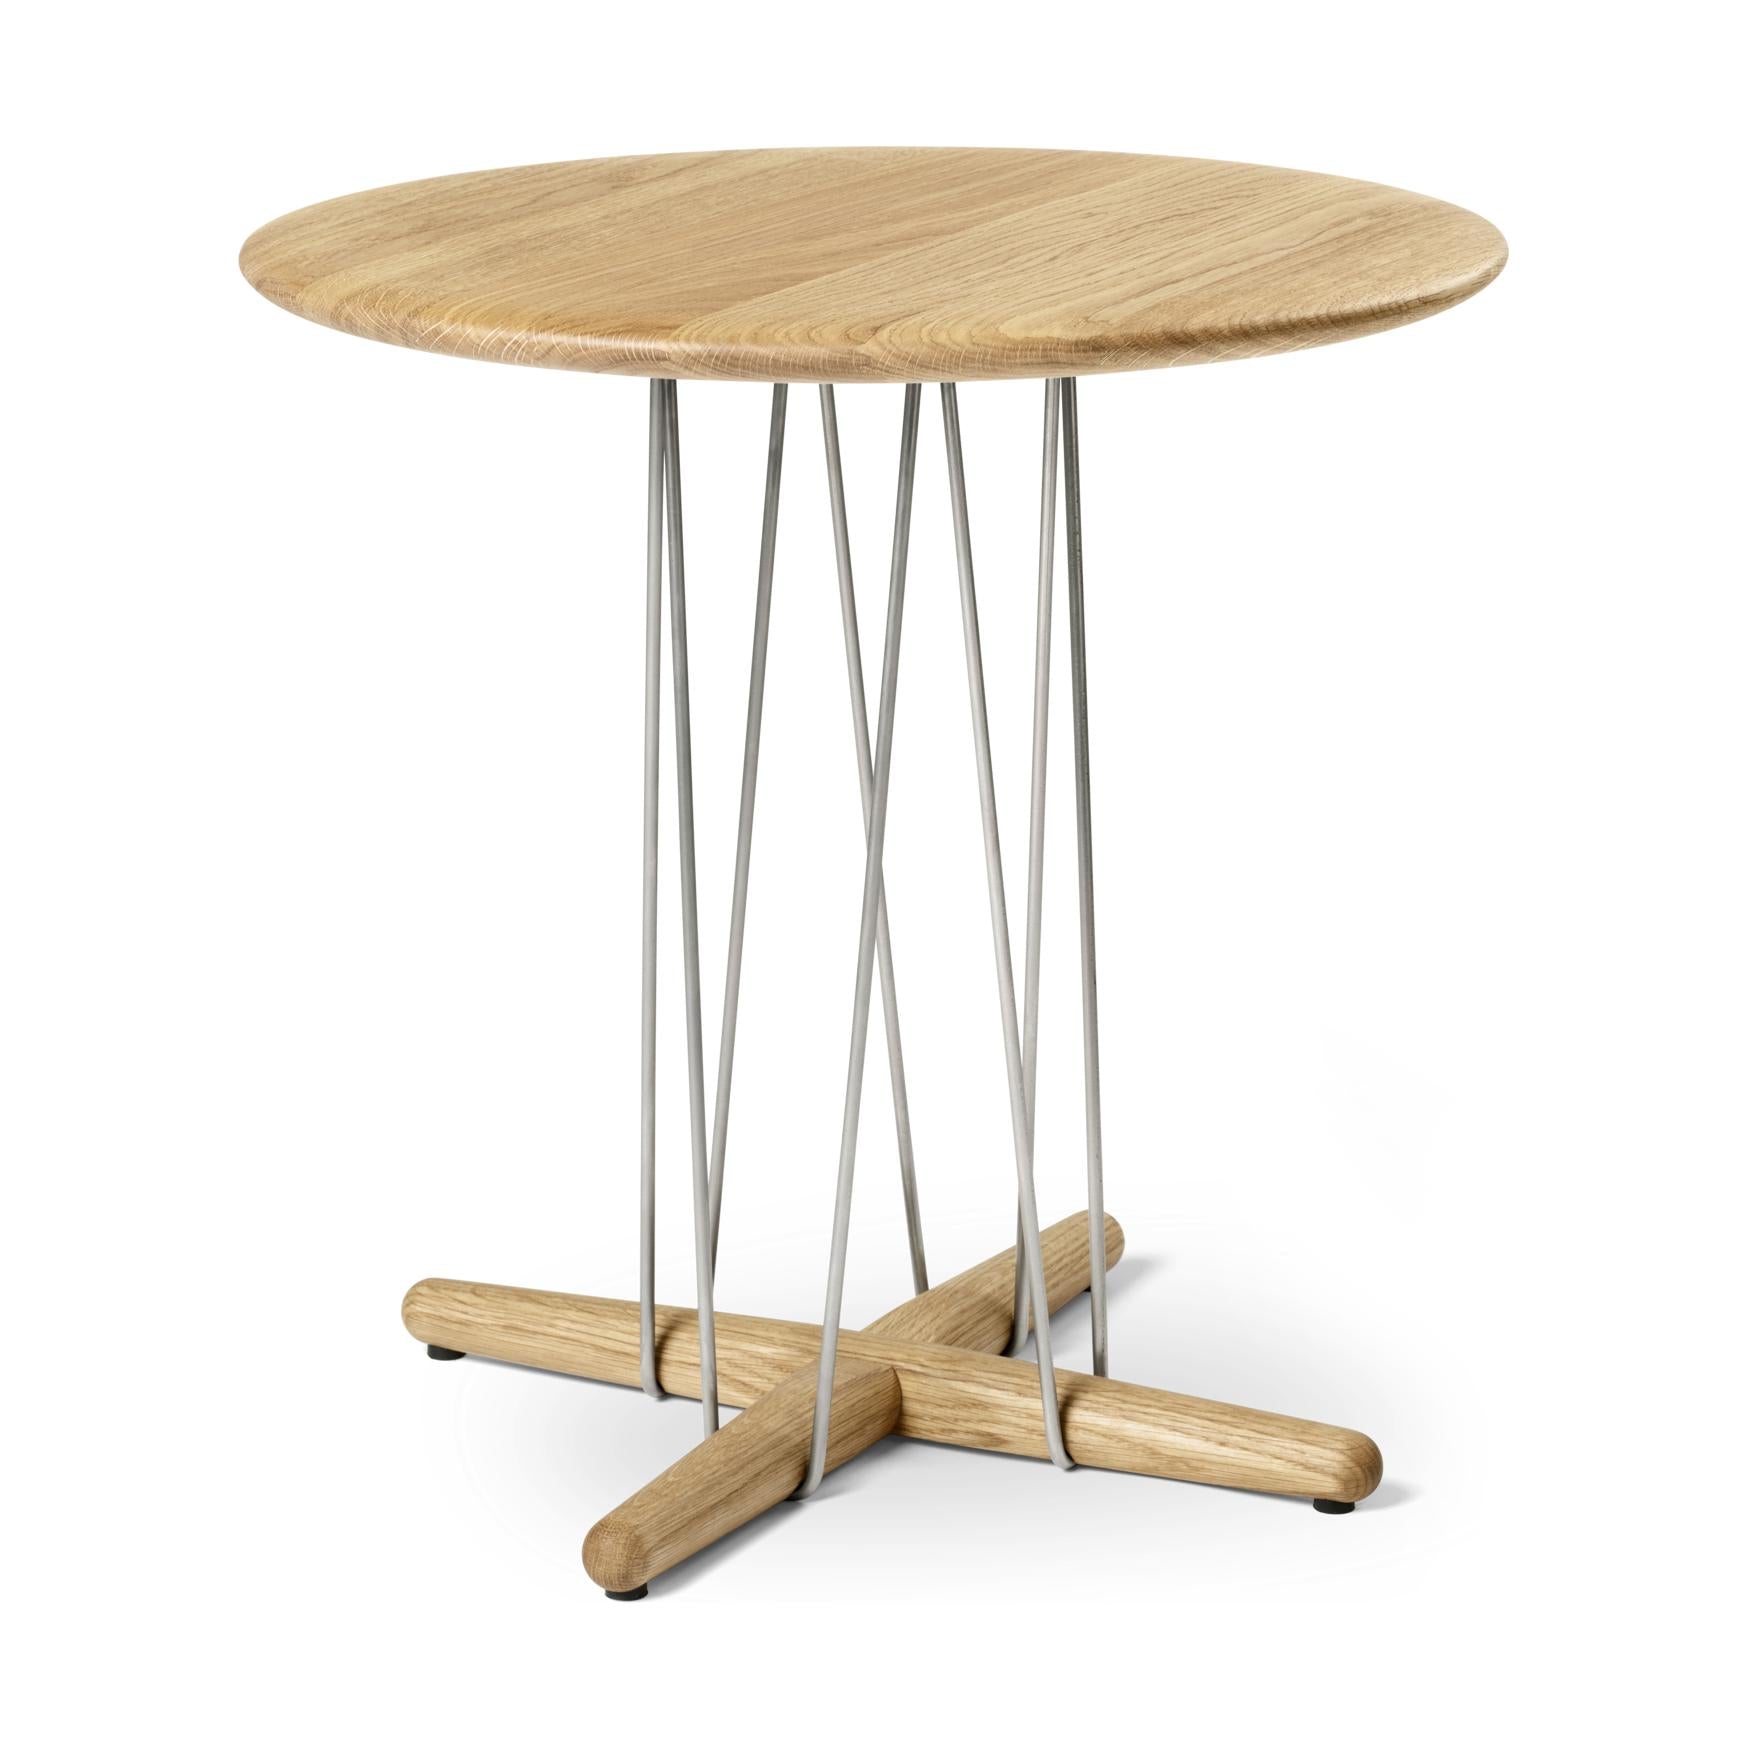 Carl Hansen E021 Embrace Table, quercia oliata, Ø 48 cm